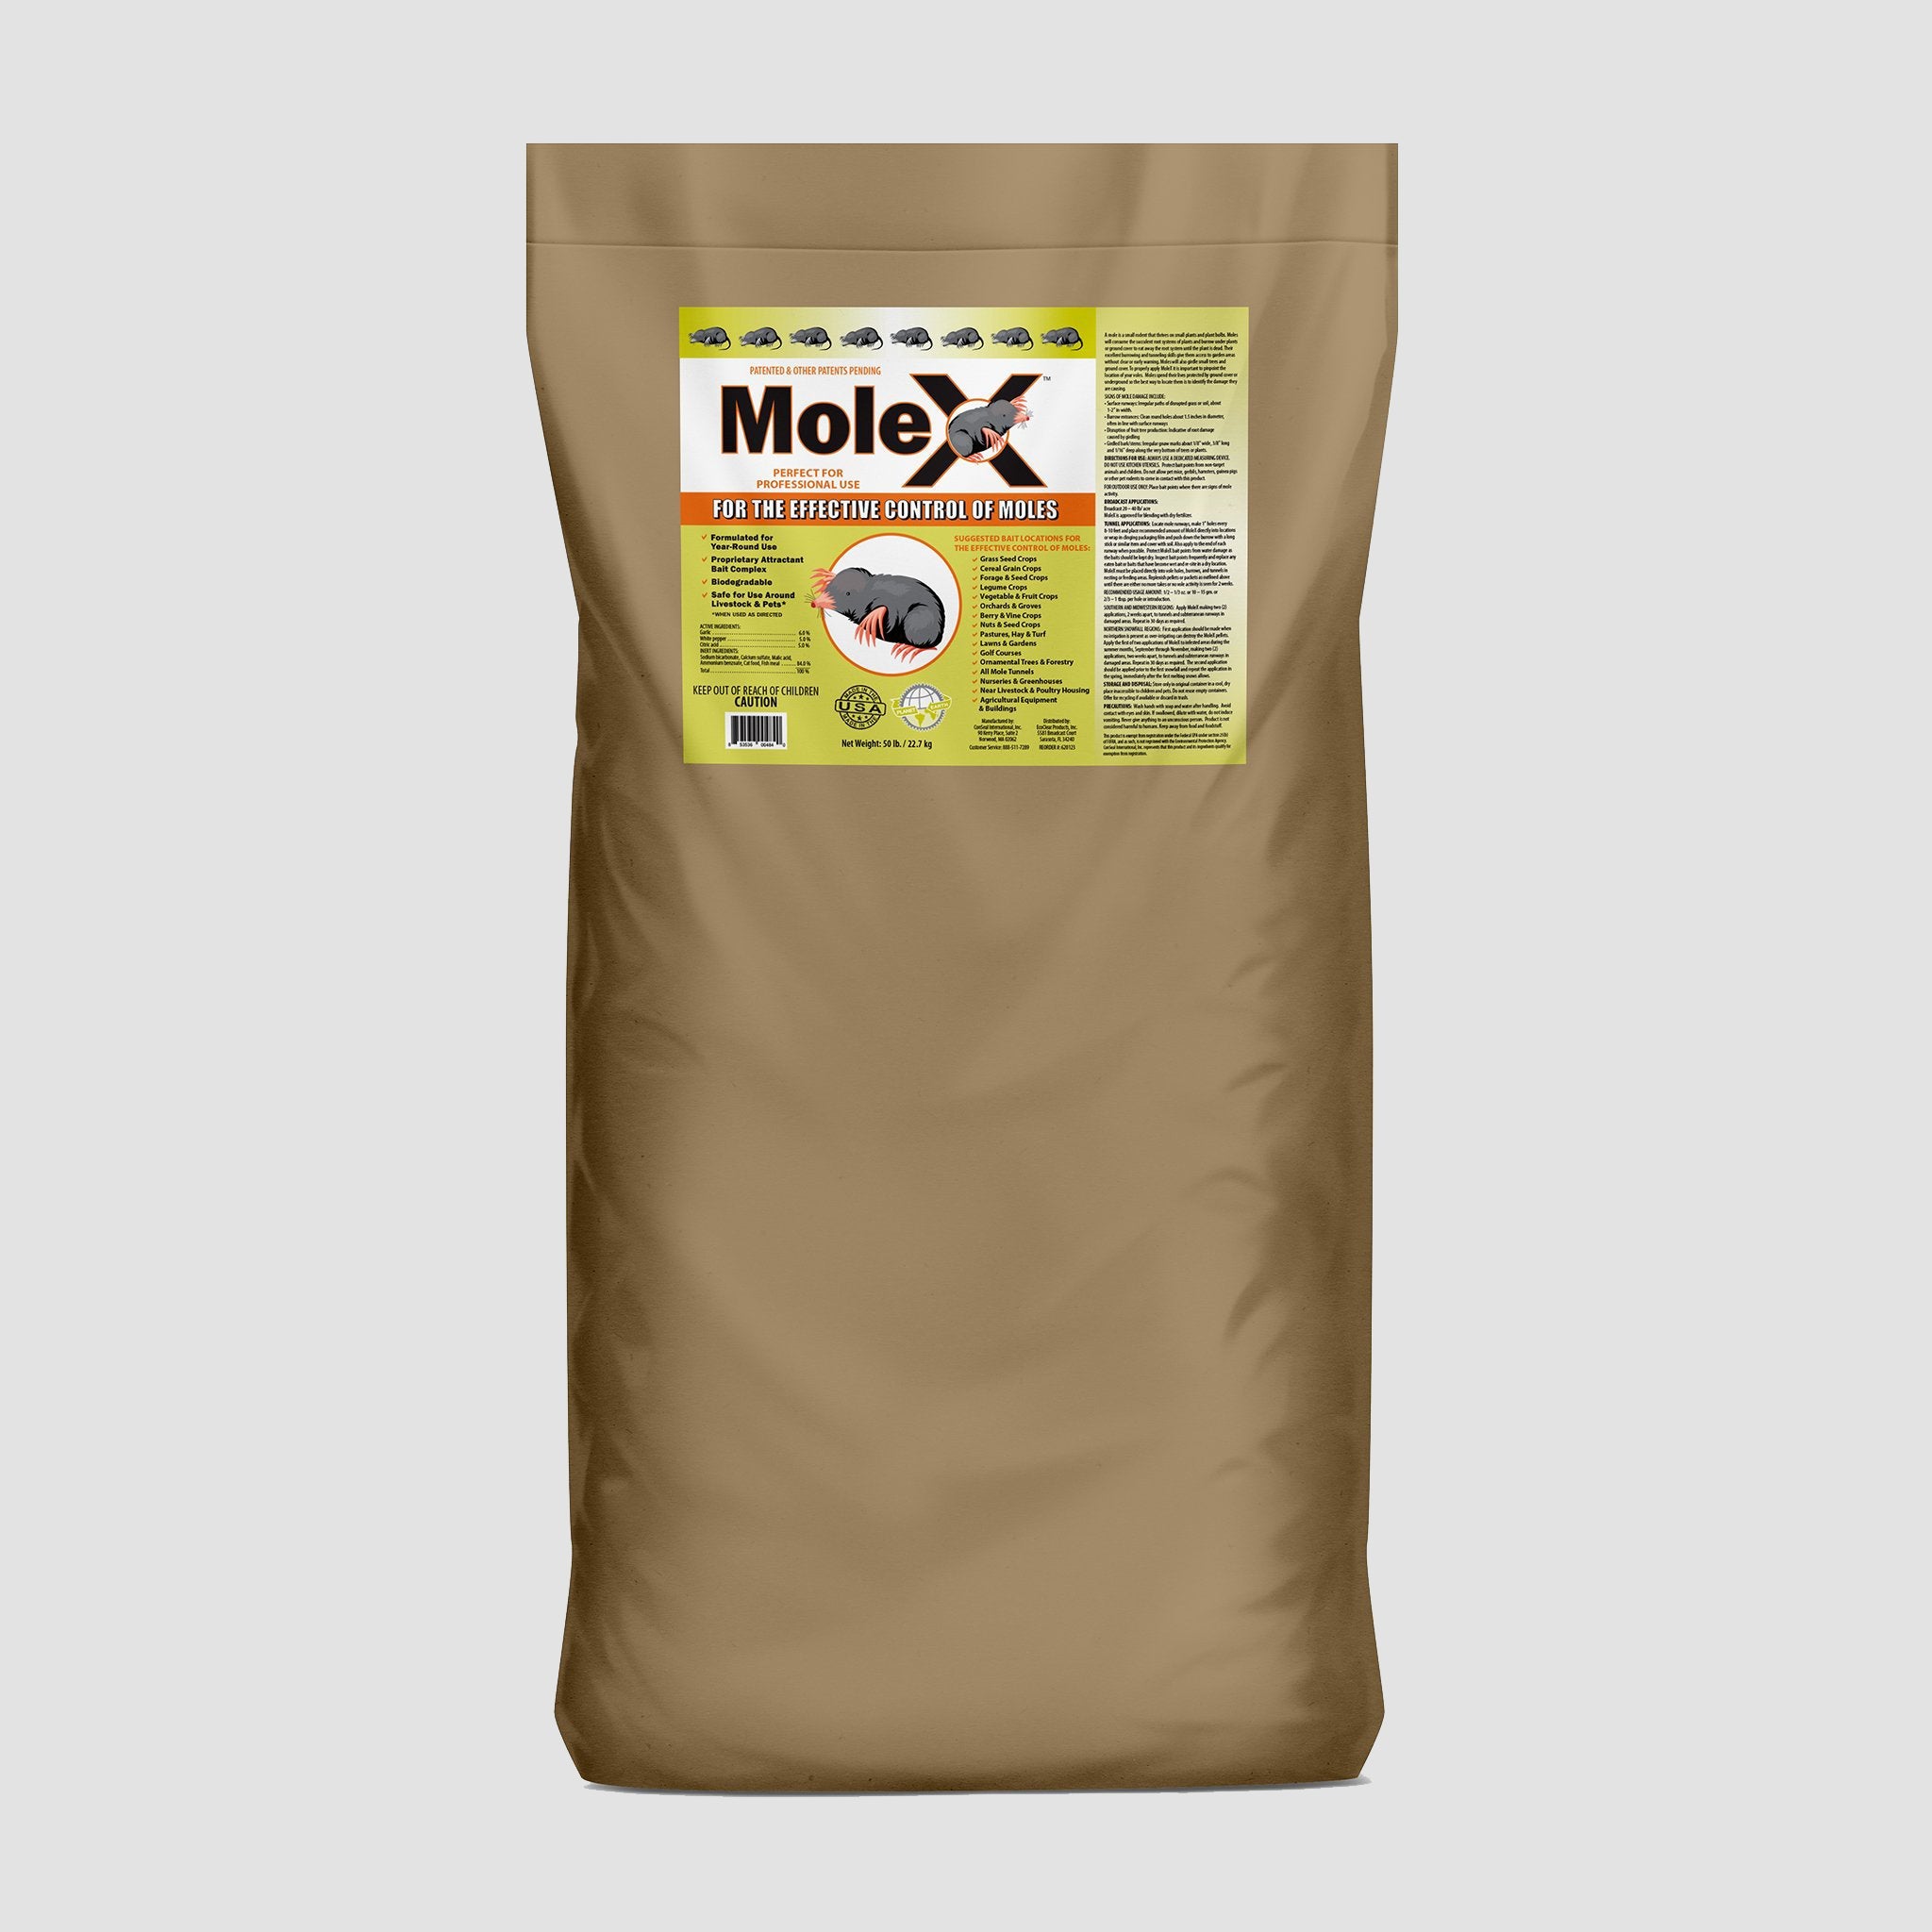 MoleX® 50 lb